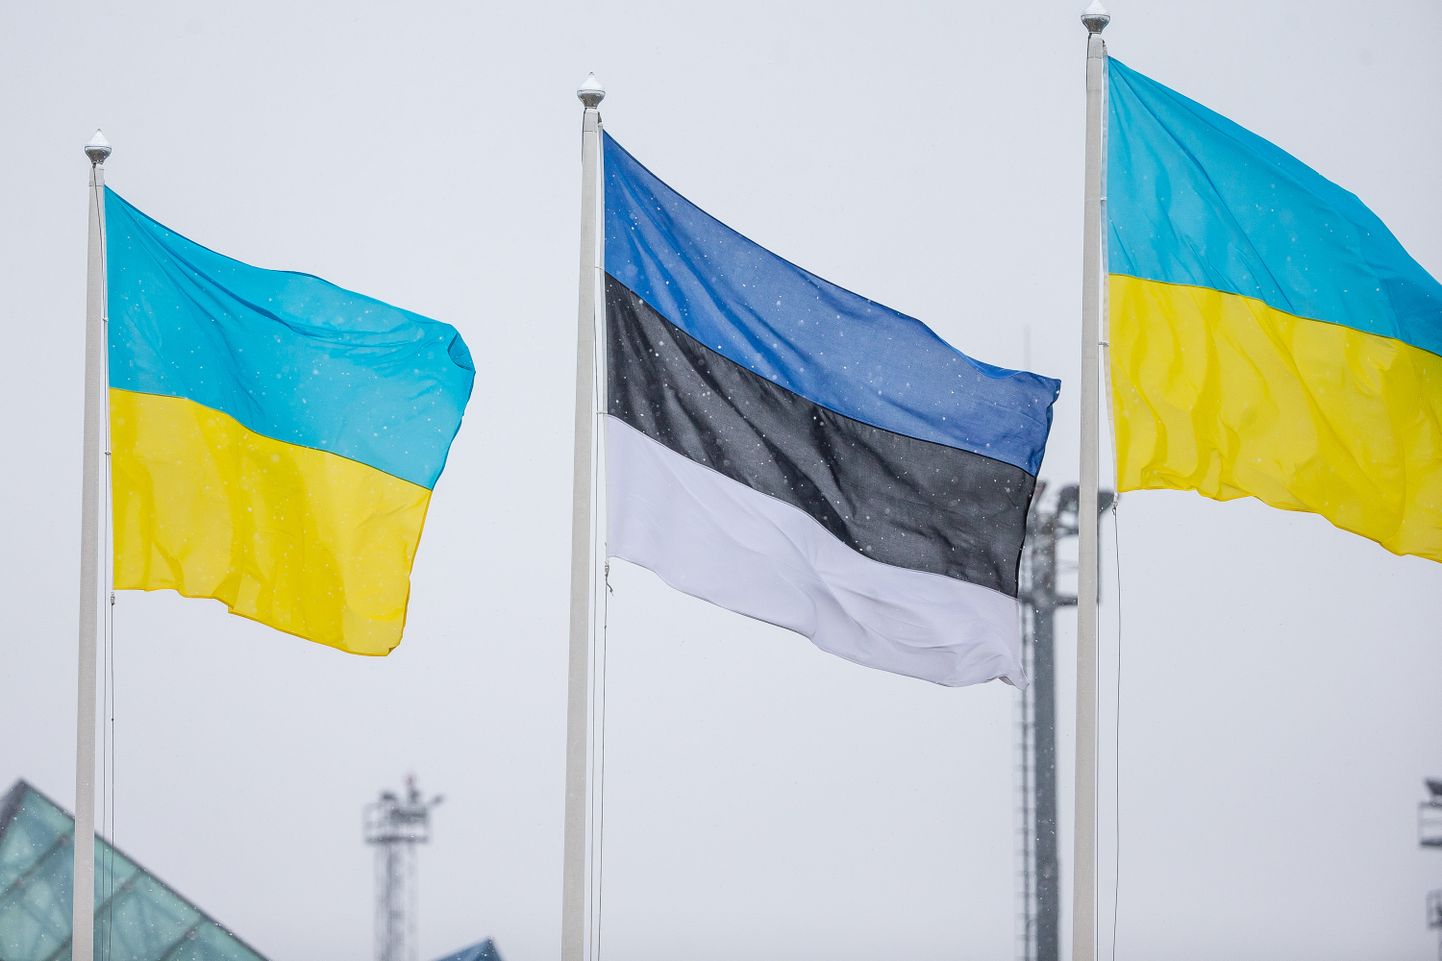 Korraldajad paluvad meelavaldusel osalejatel võtta kaasa Eesti ja Ukraina lipud.